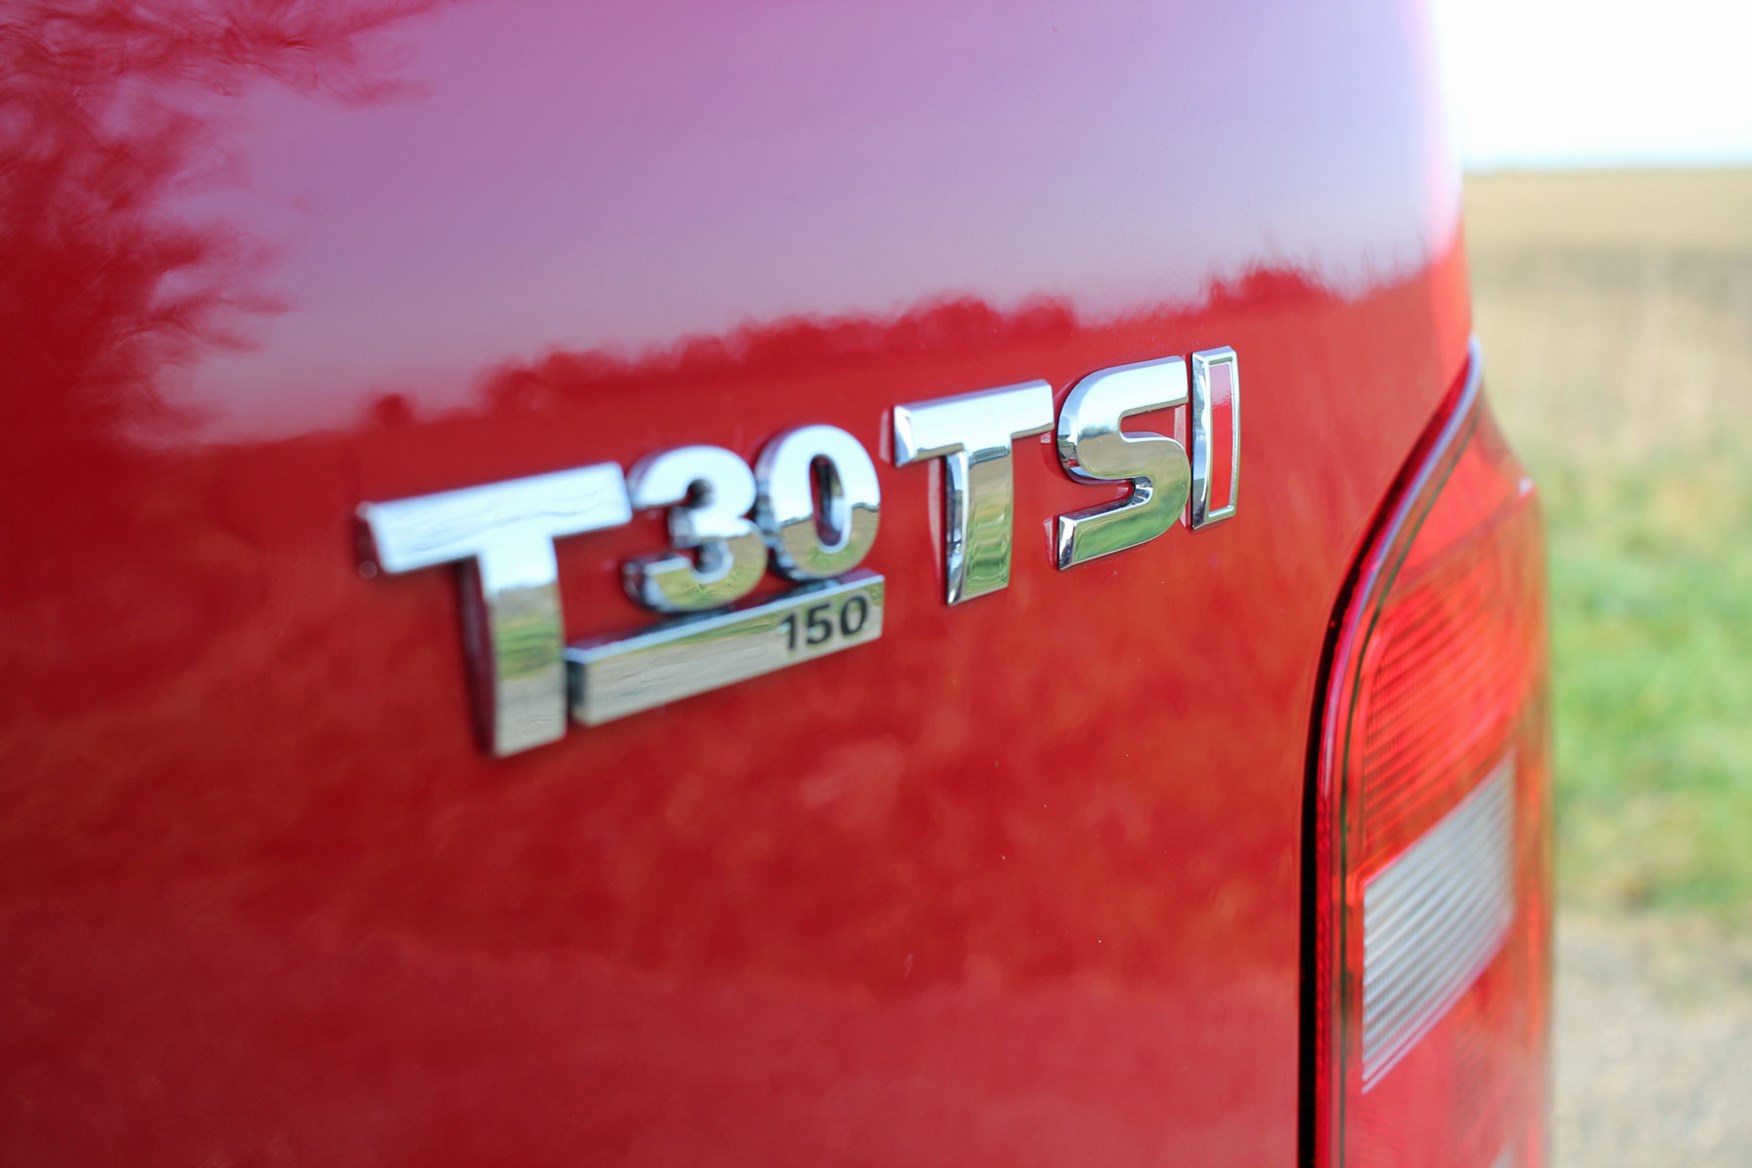 VW Transporter T6 TSI 150 review - T30 badge